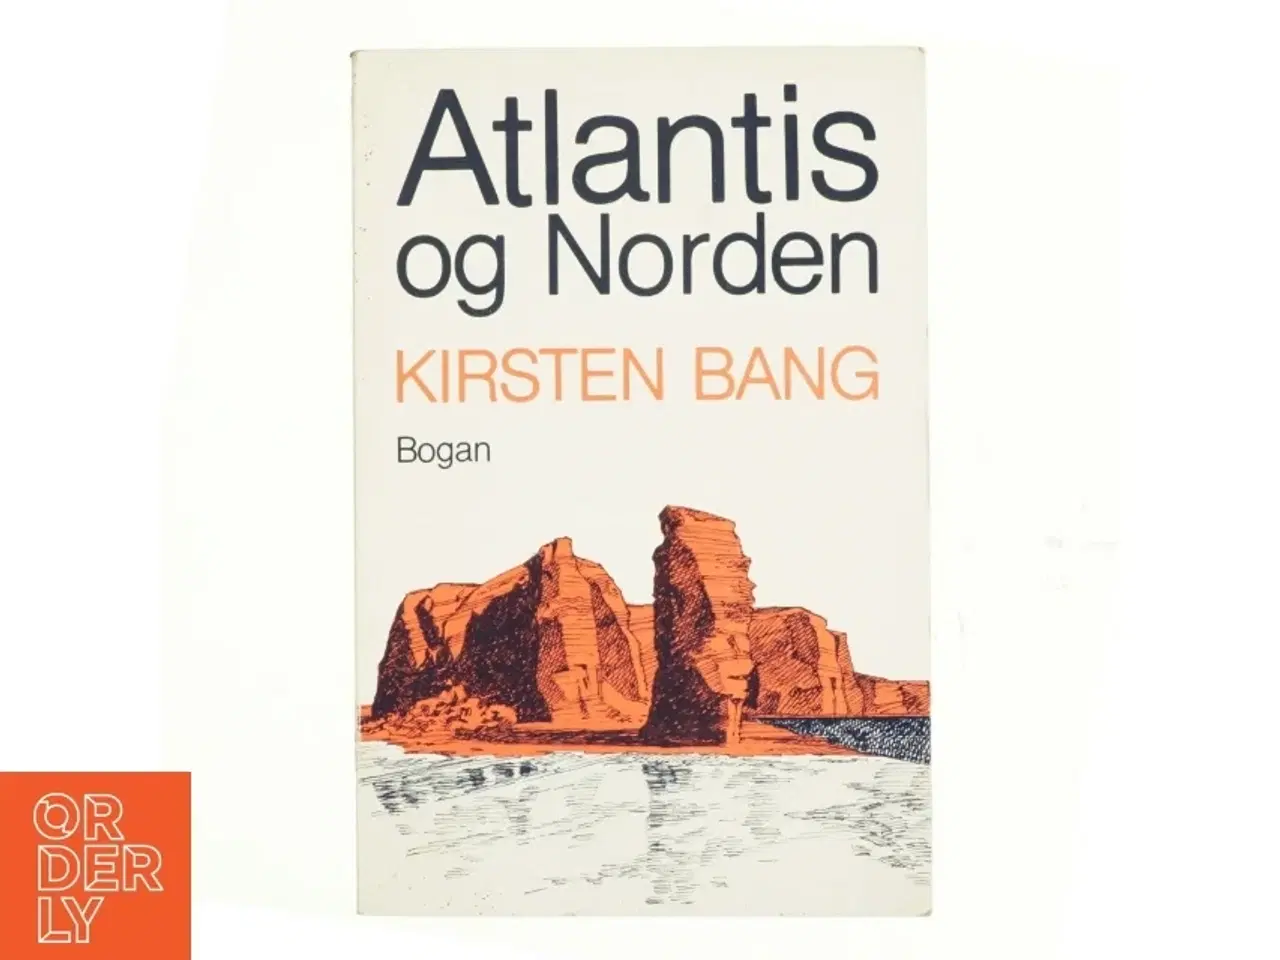 Billede 1 - Atlantis og norden af Kirsten Bang (bog)